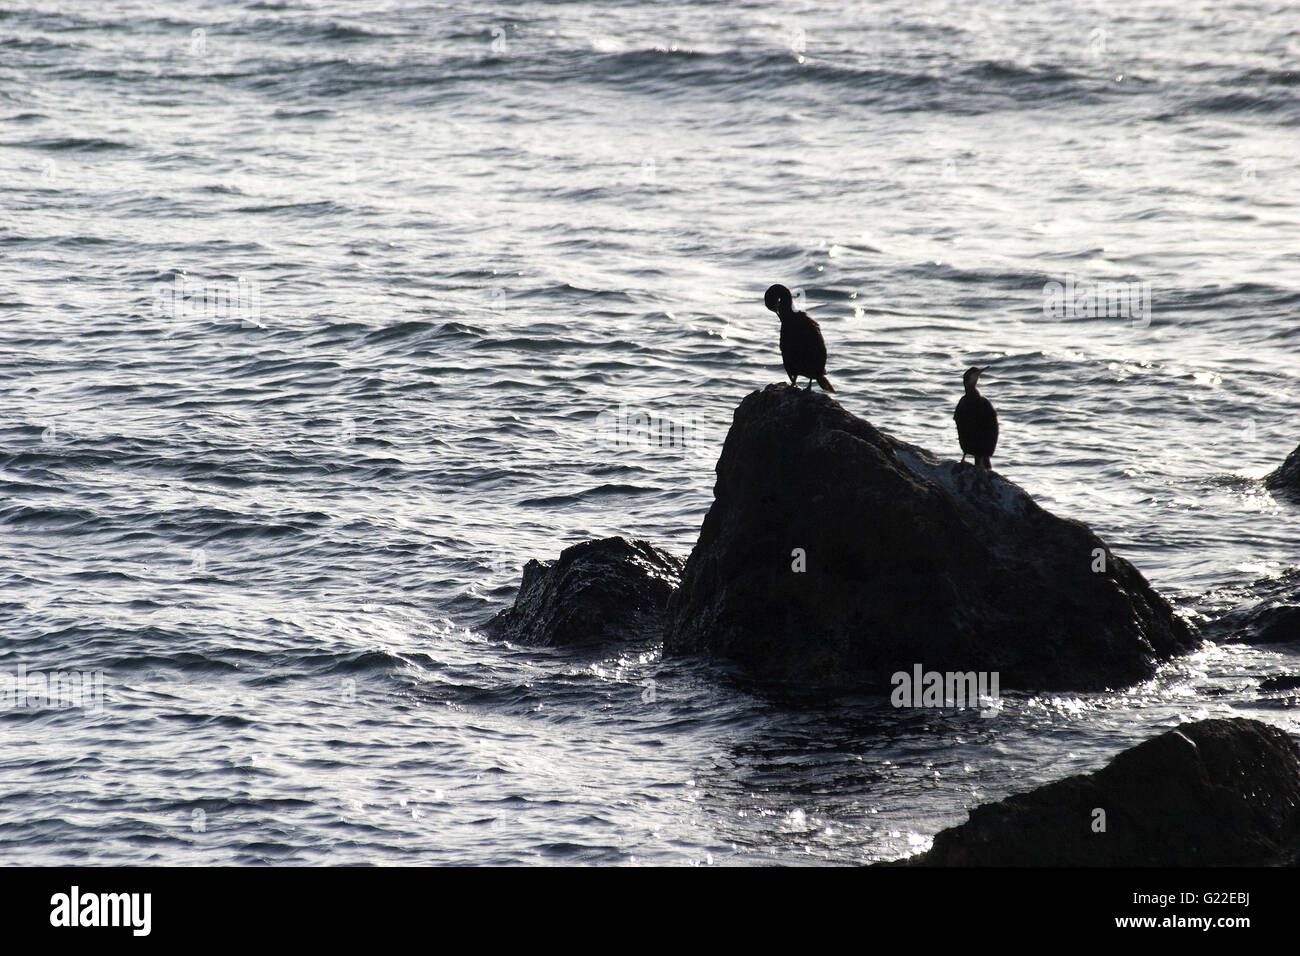 Une silhouette poétique photo de deux oiseaux sur un rocher au bord de la mer, Palma de Majorque, Espagne, mer, Tourisme, vacances, été Banque D'Images